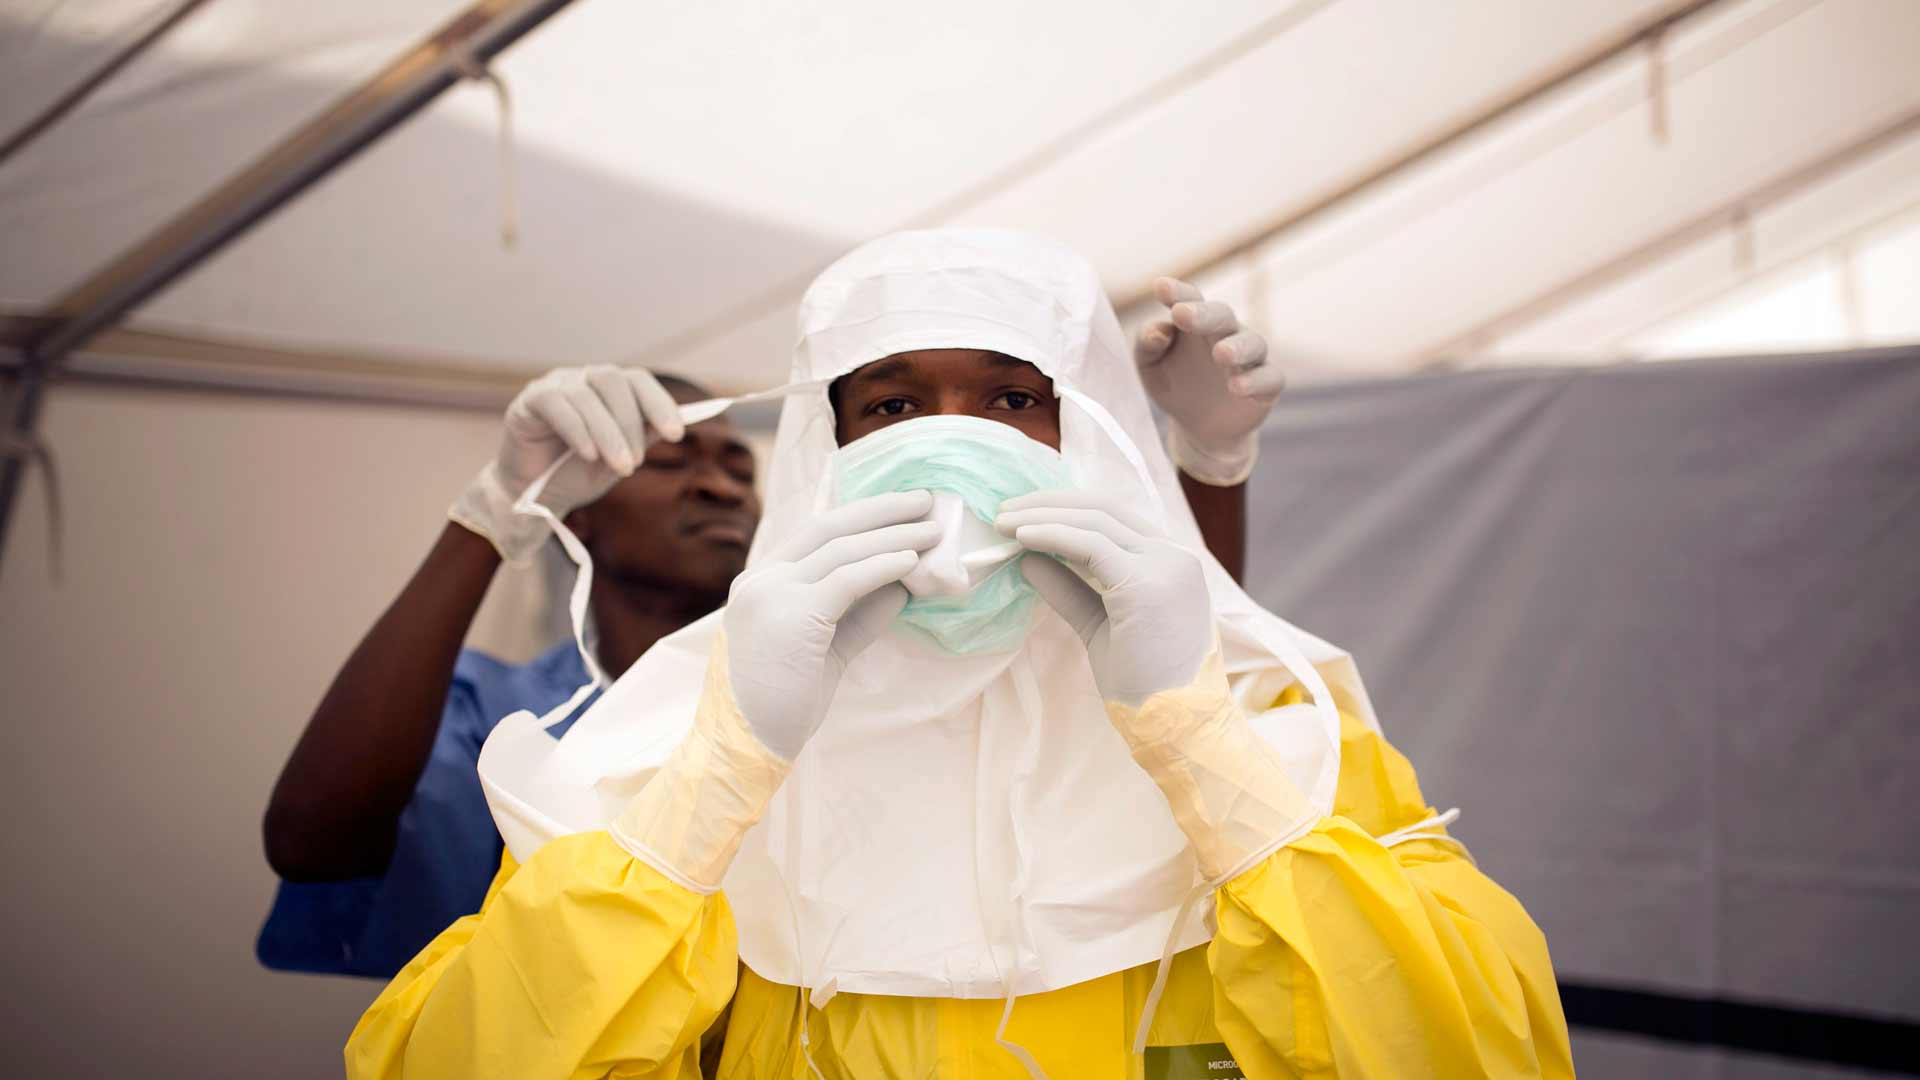 La Cruz Roja revela el desvío de 5 millones de euros destinados a la lucha contra el ébola